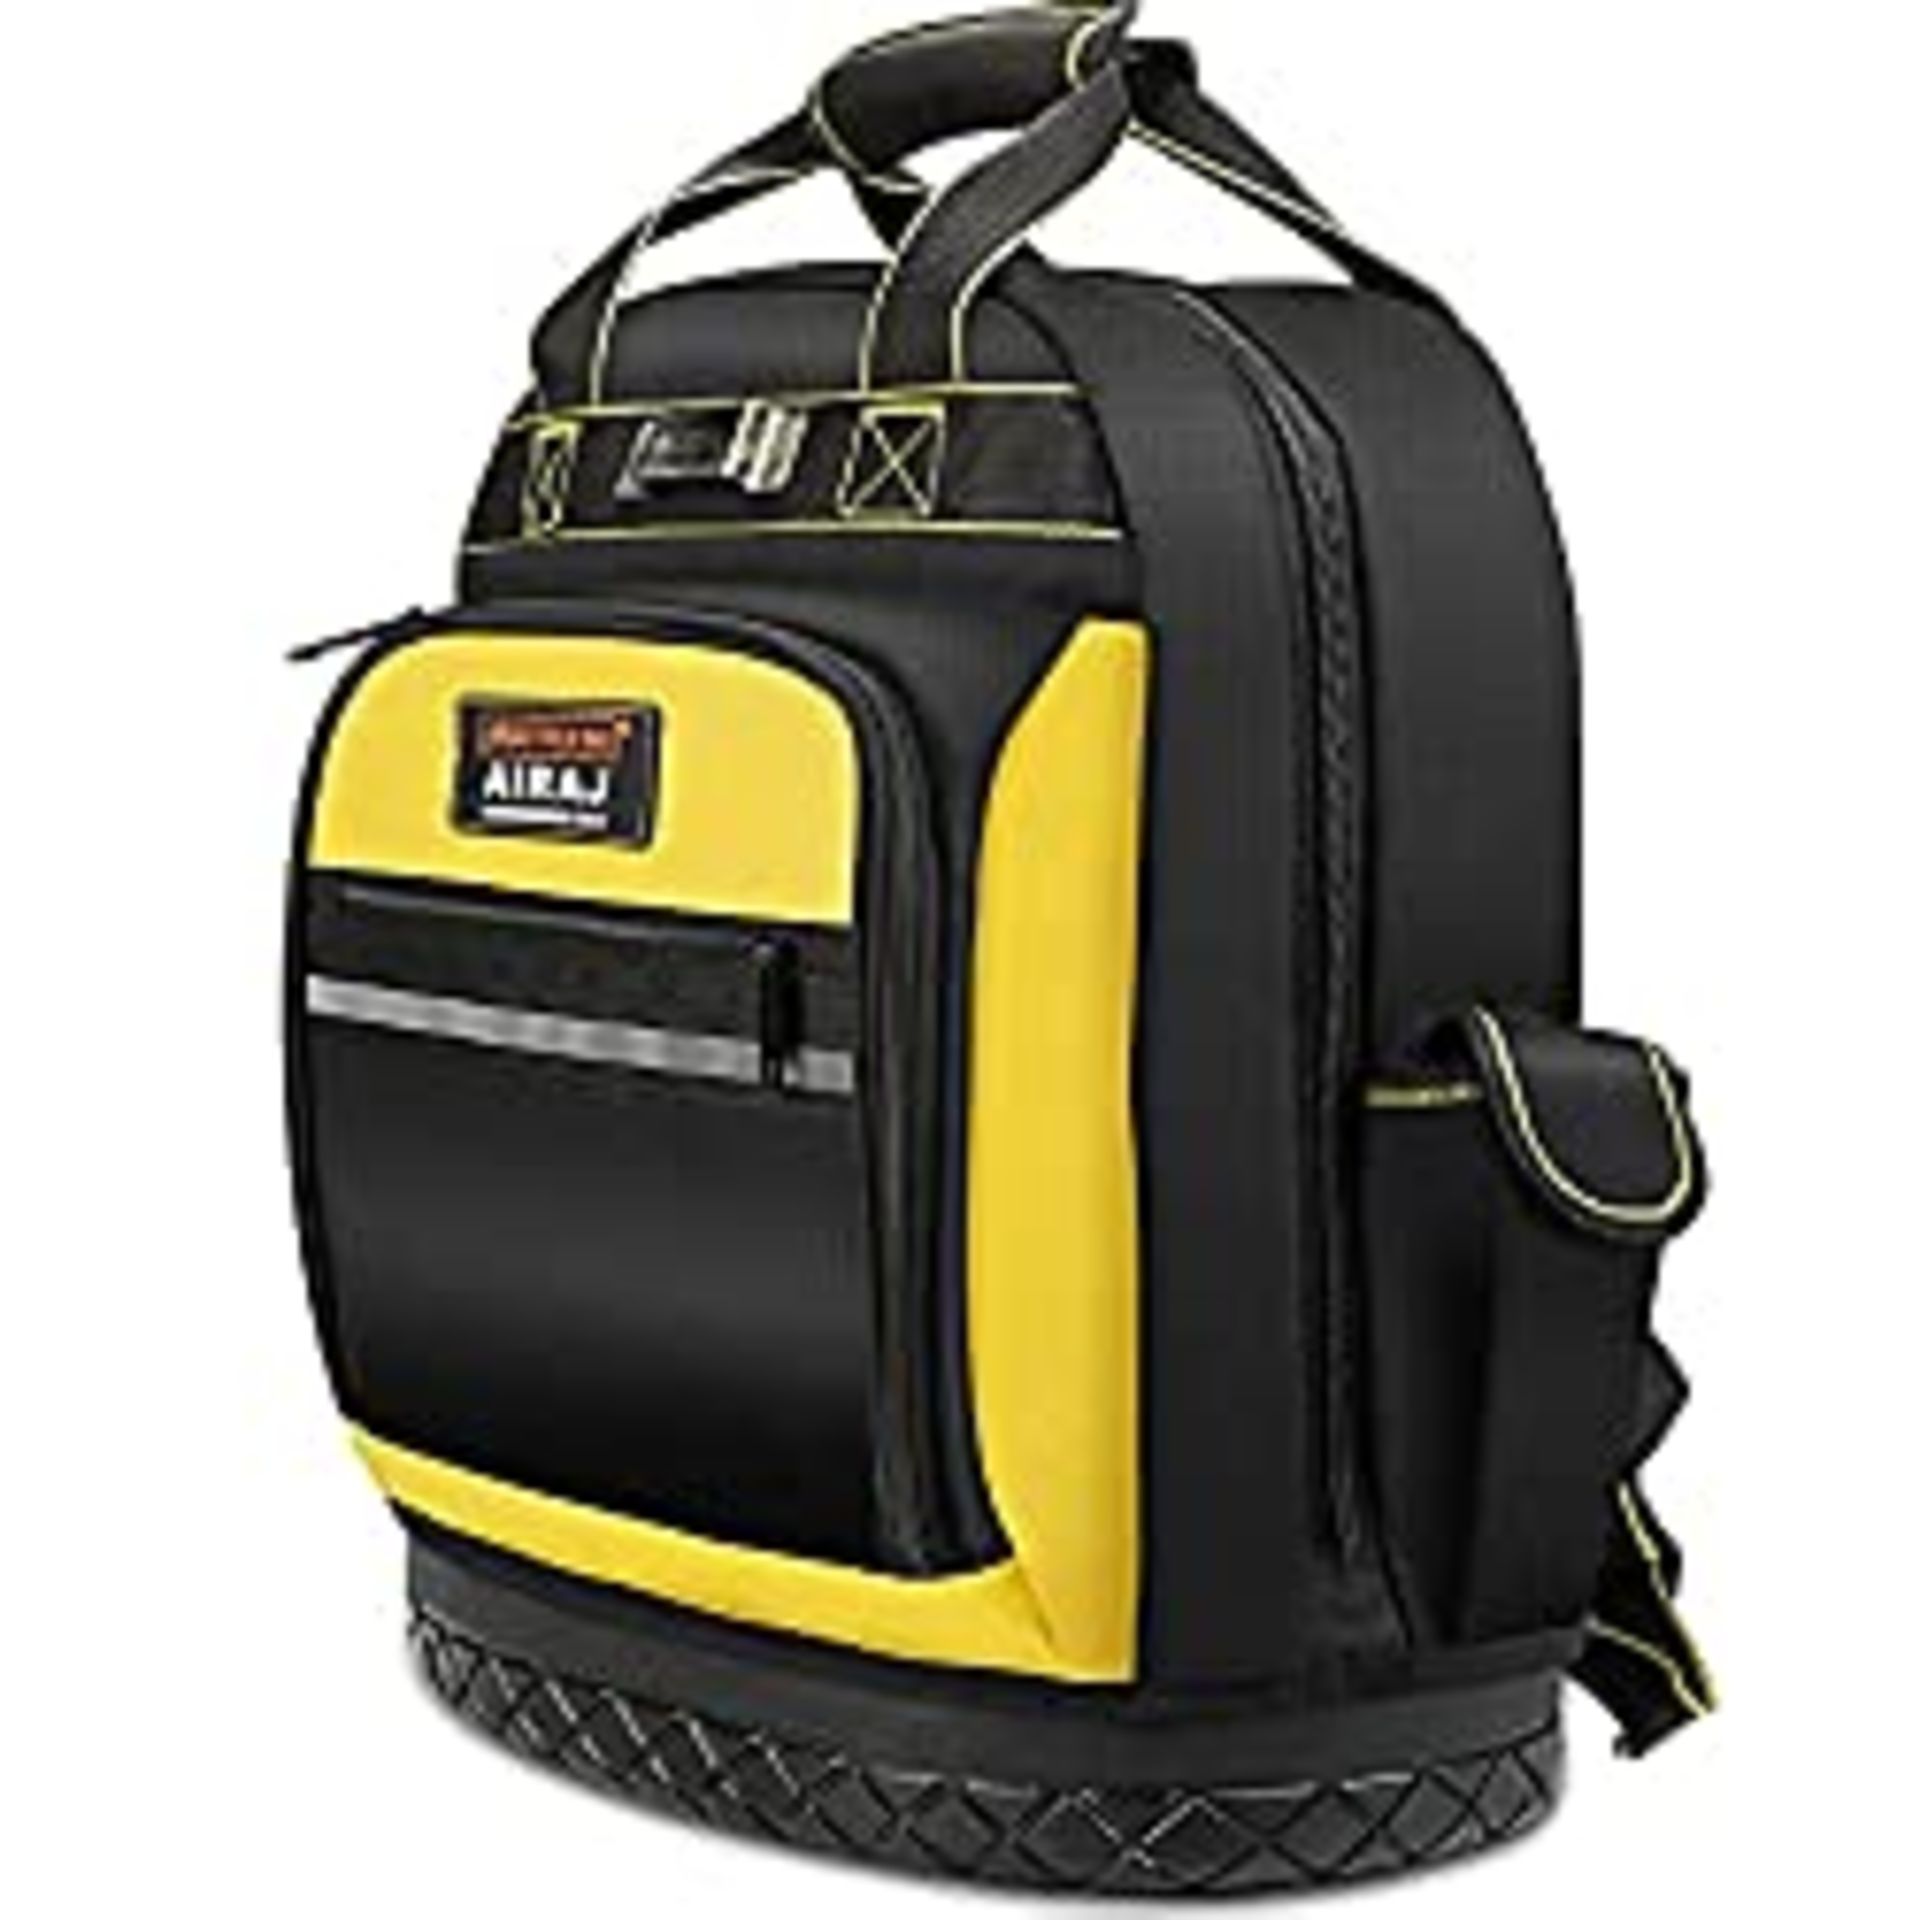 RRP £36.98 AIRAJ Waterproof Tool Backpack